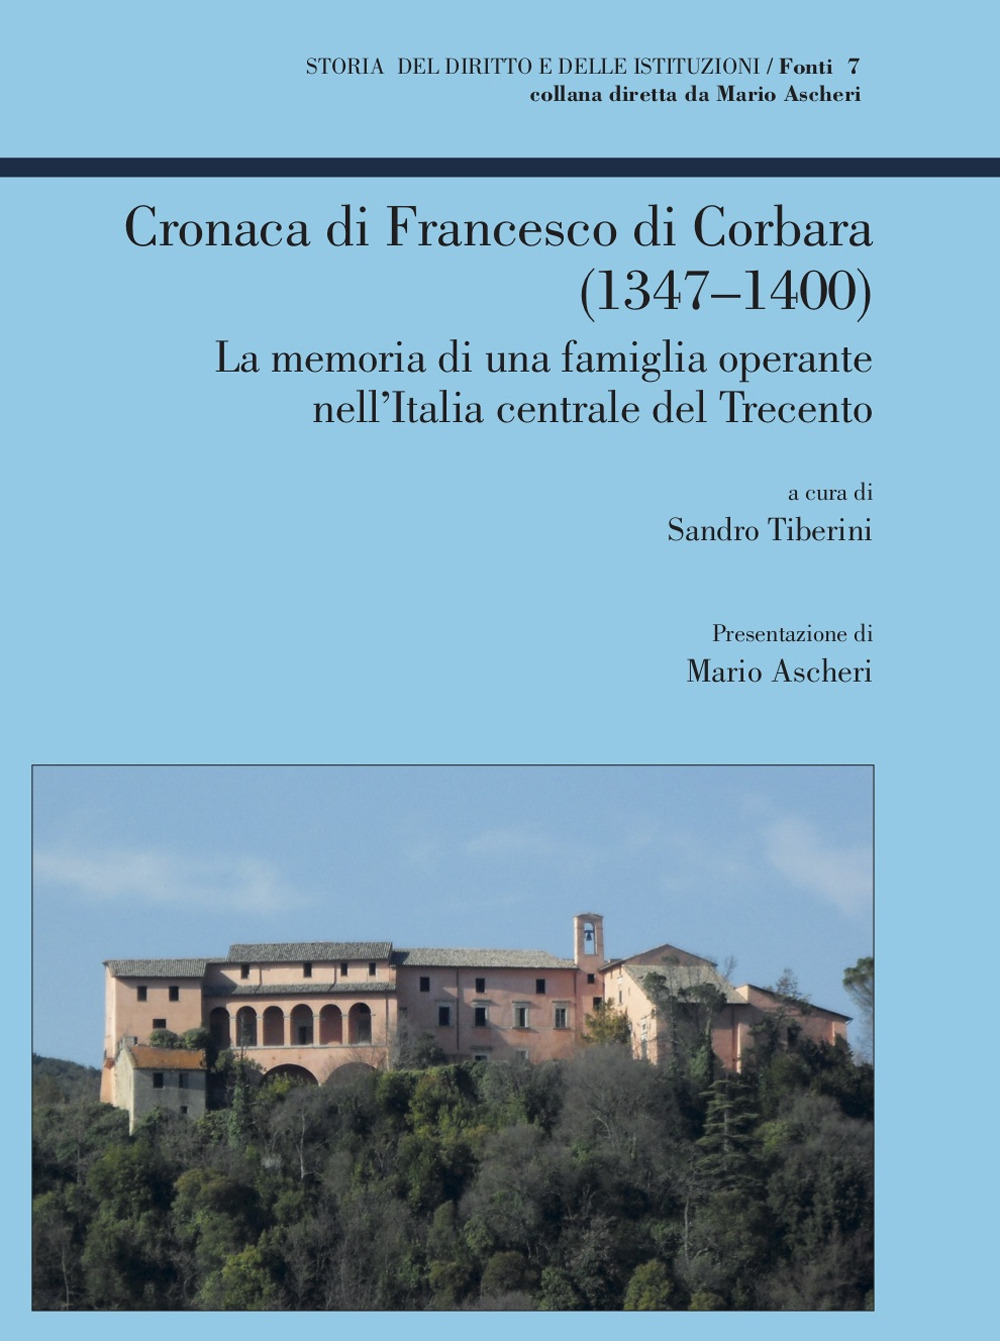 Cronaca di Francesco di Corbara (1347-1400). La memoria di una famiglia operante nell'Italia centrale del Trecento